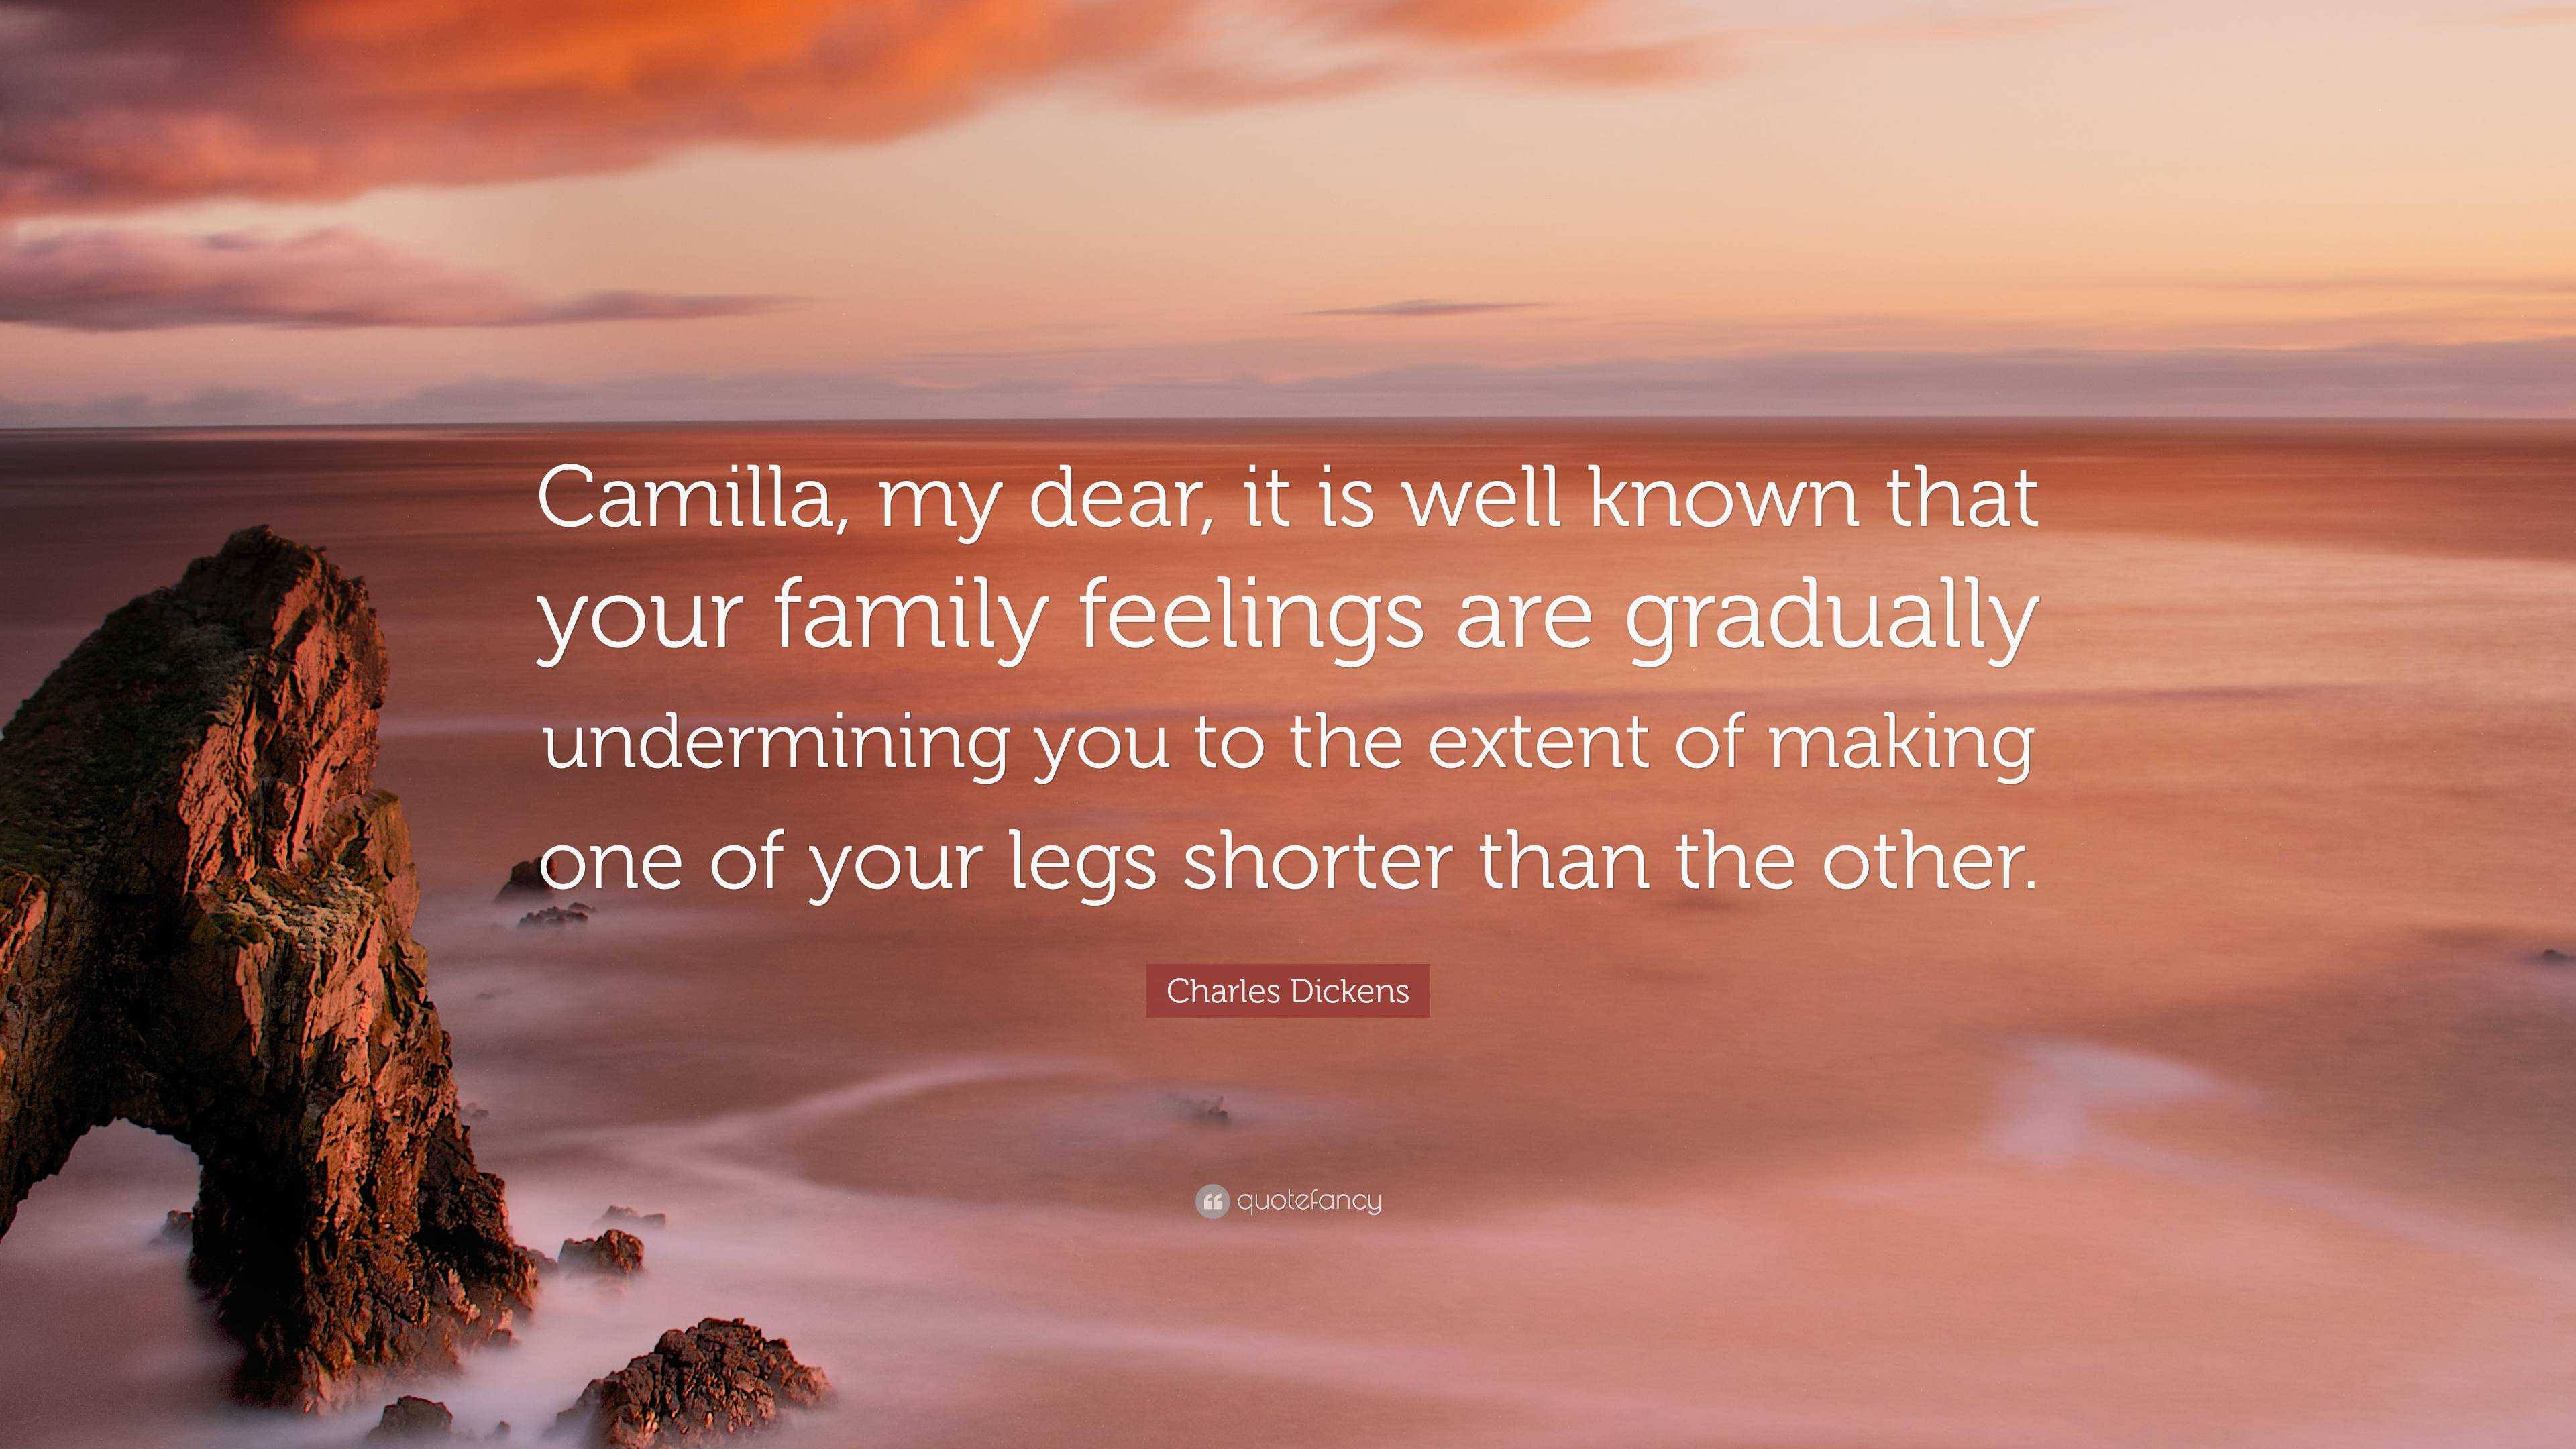 My dear camilla